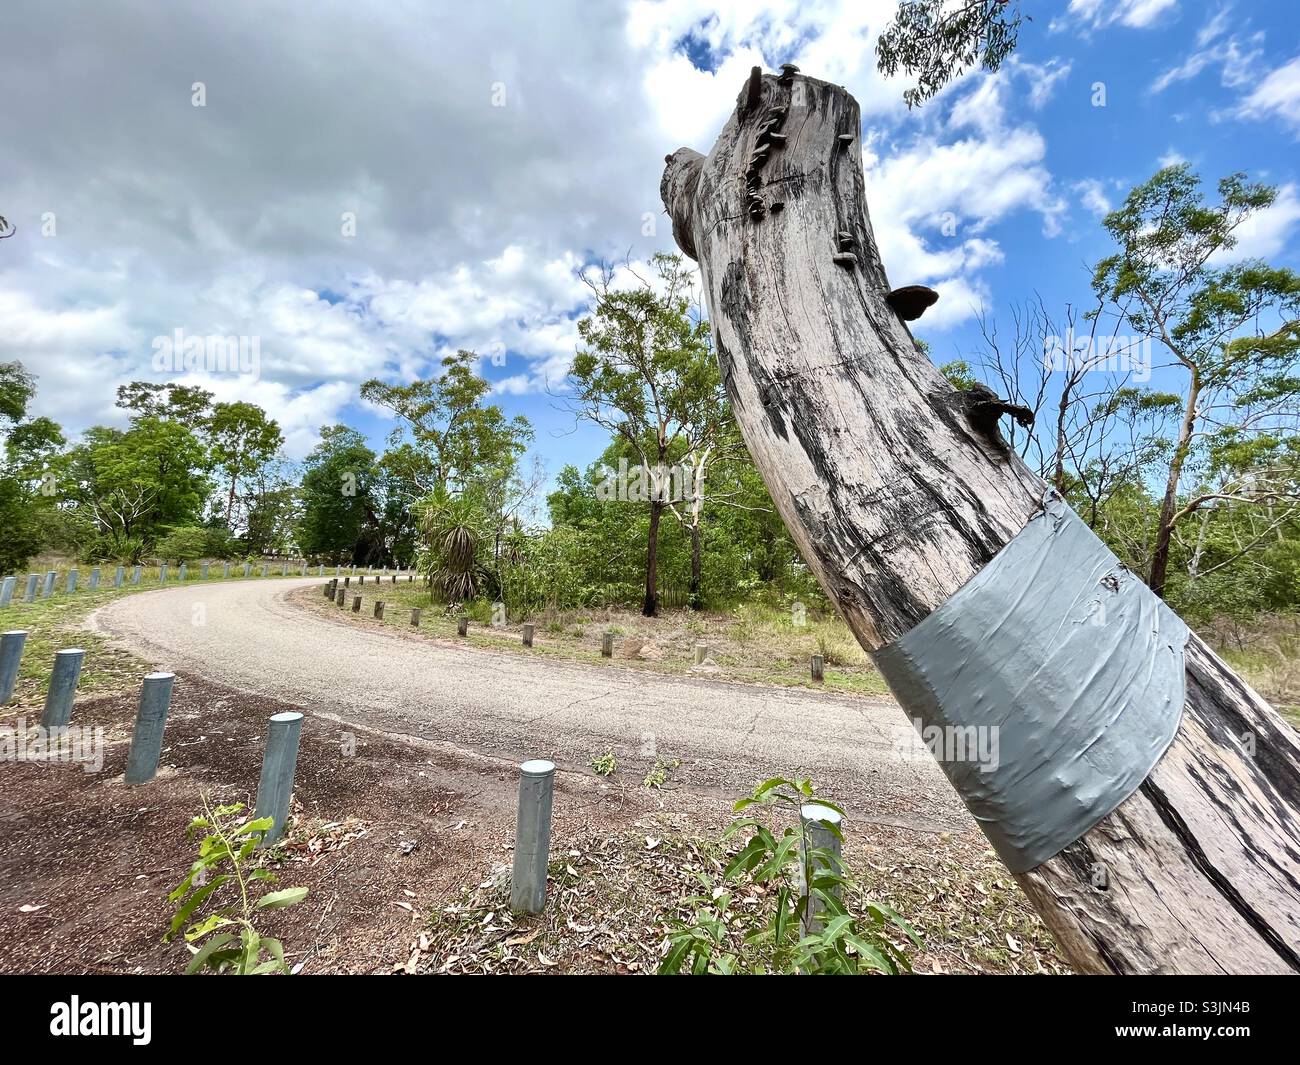 Landstraße in Australien mit abgestorbenen Bäumen, die in Gaffer-Klebeband eingewickelt sind. Stockfoto